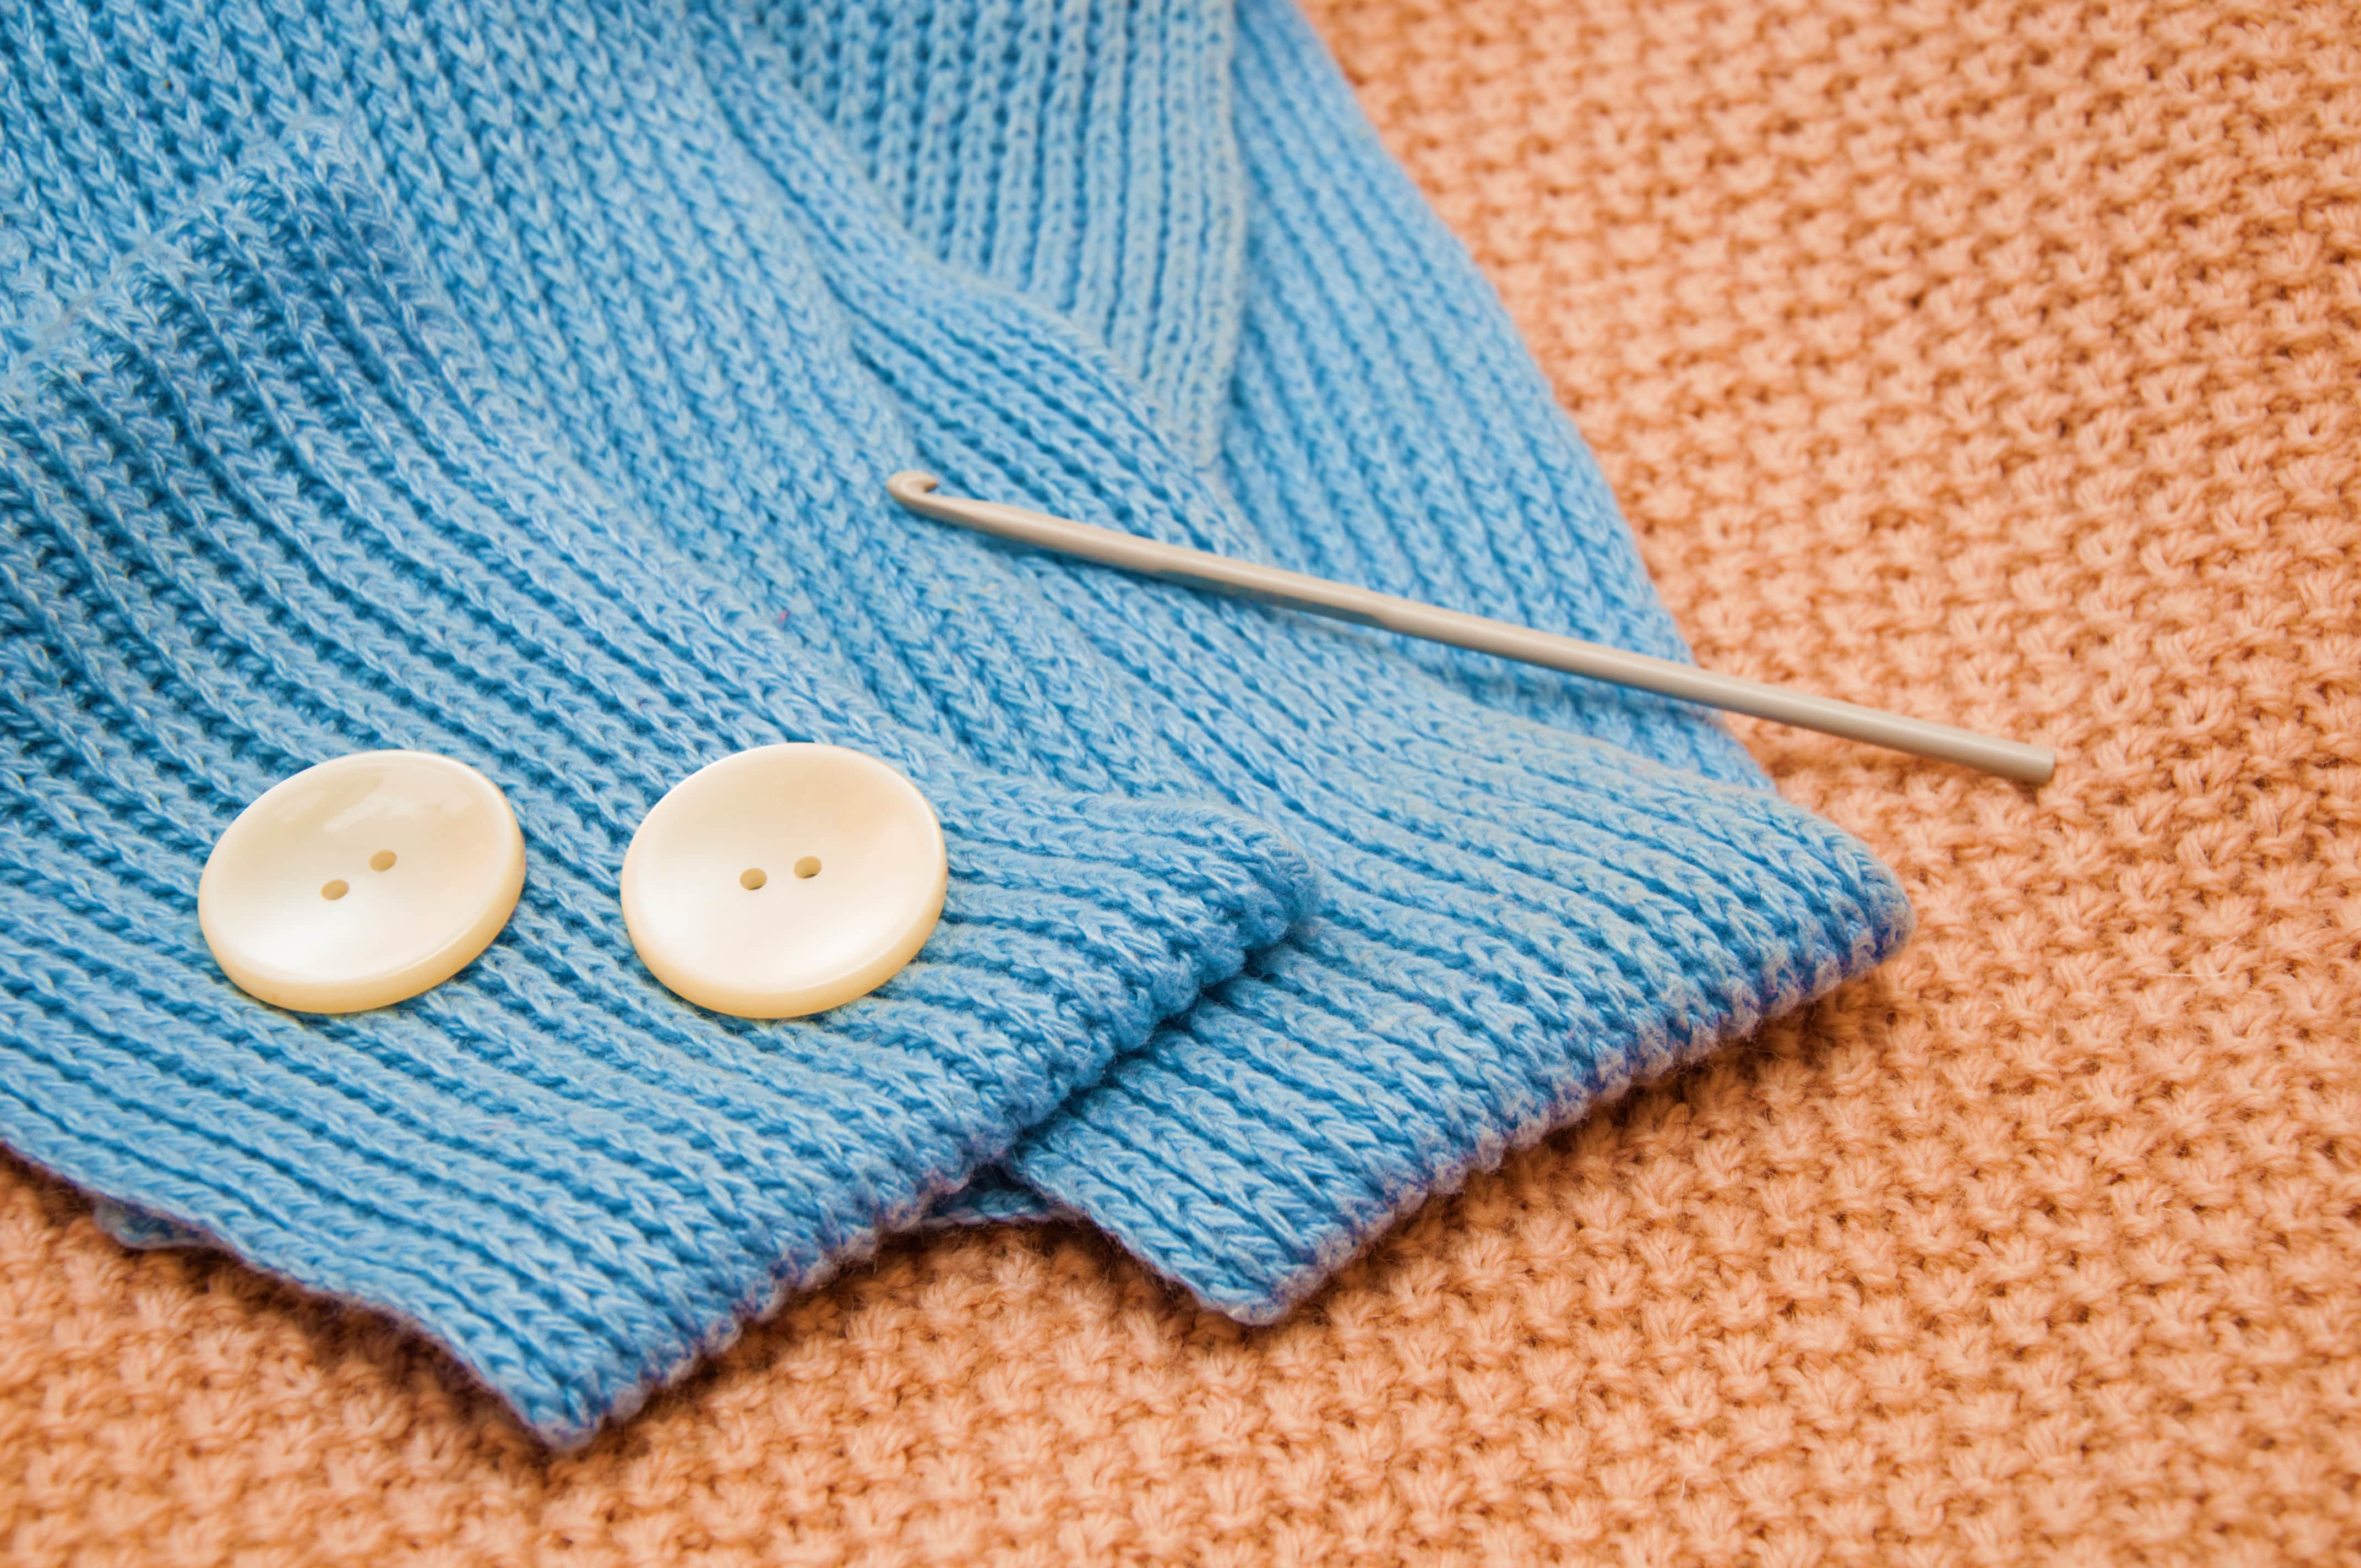 crochet starter kit